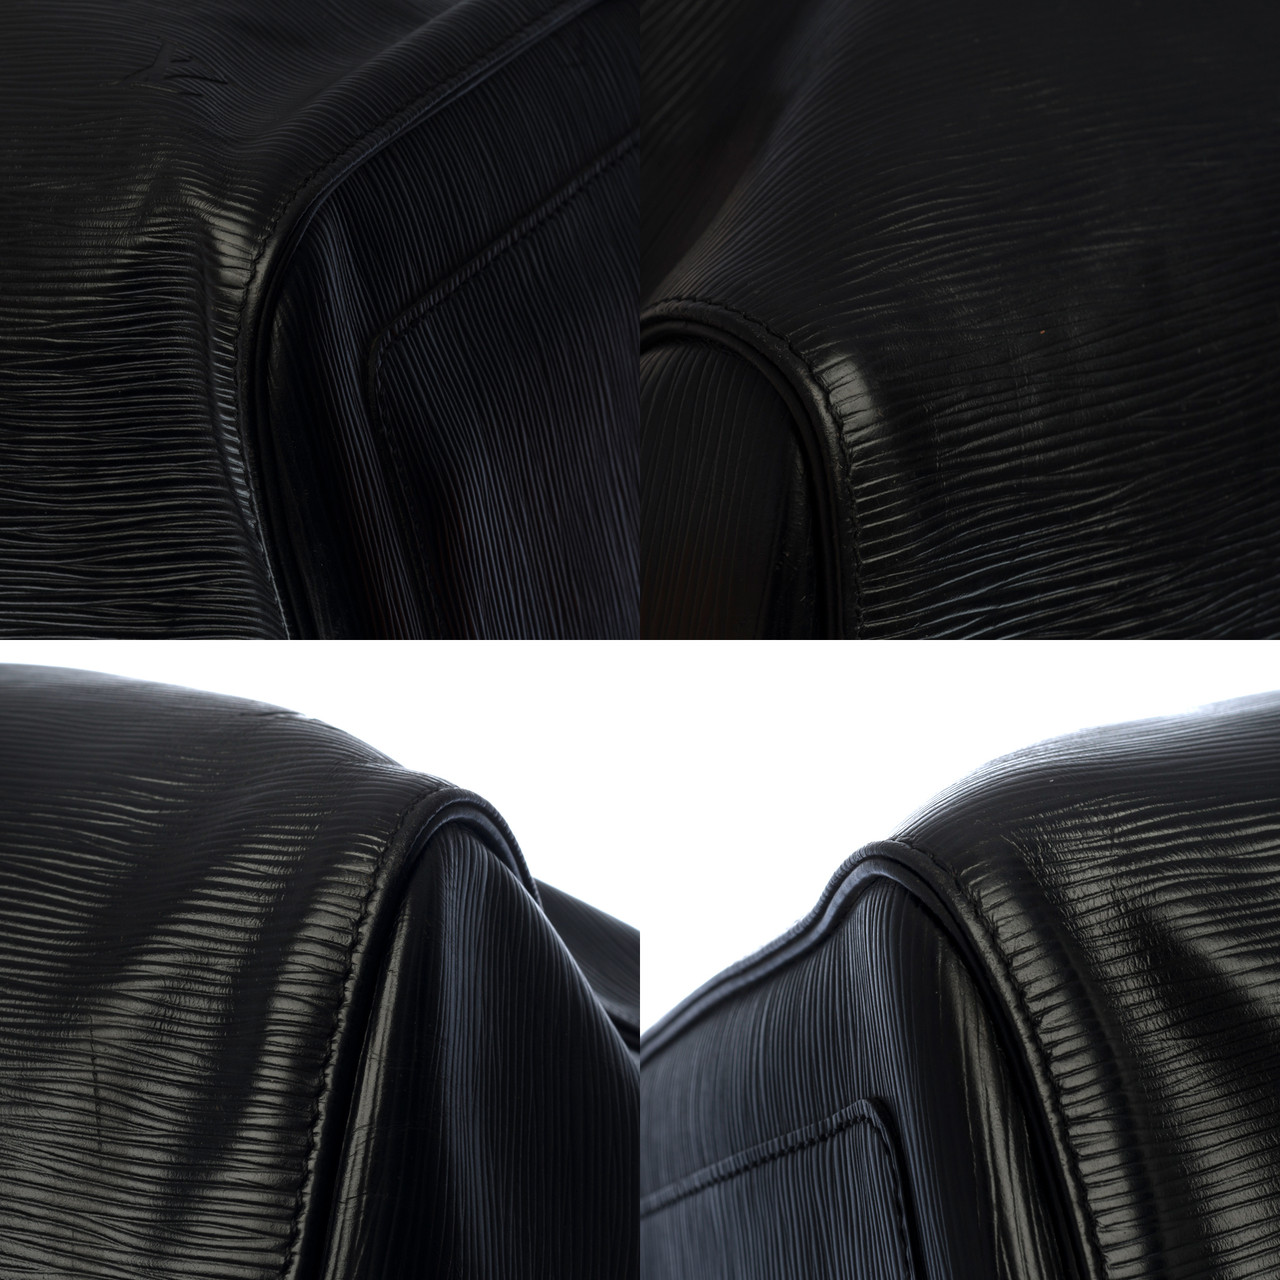 Sac de voyage Louis Vuitton Keepall 60 en cuir épi noir et cuir glacé